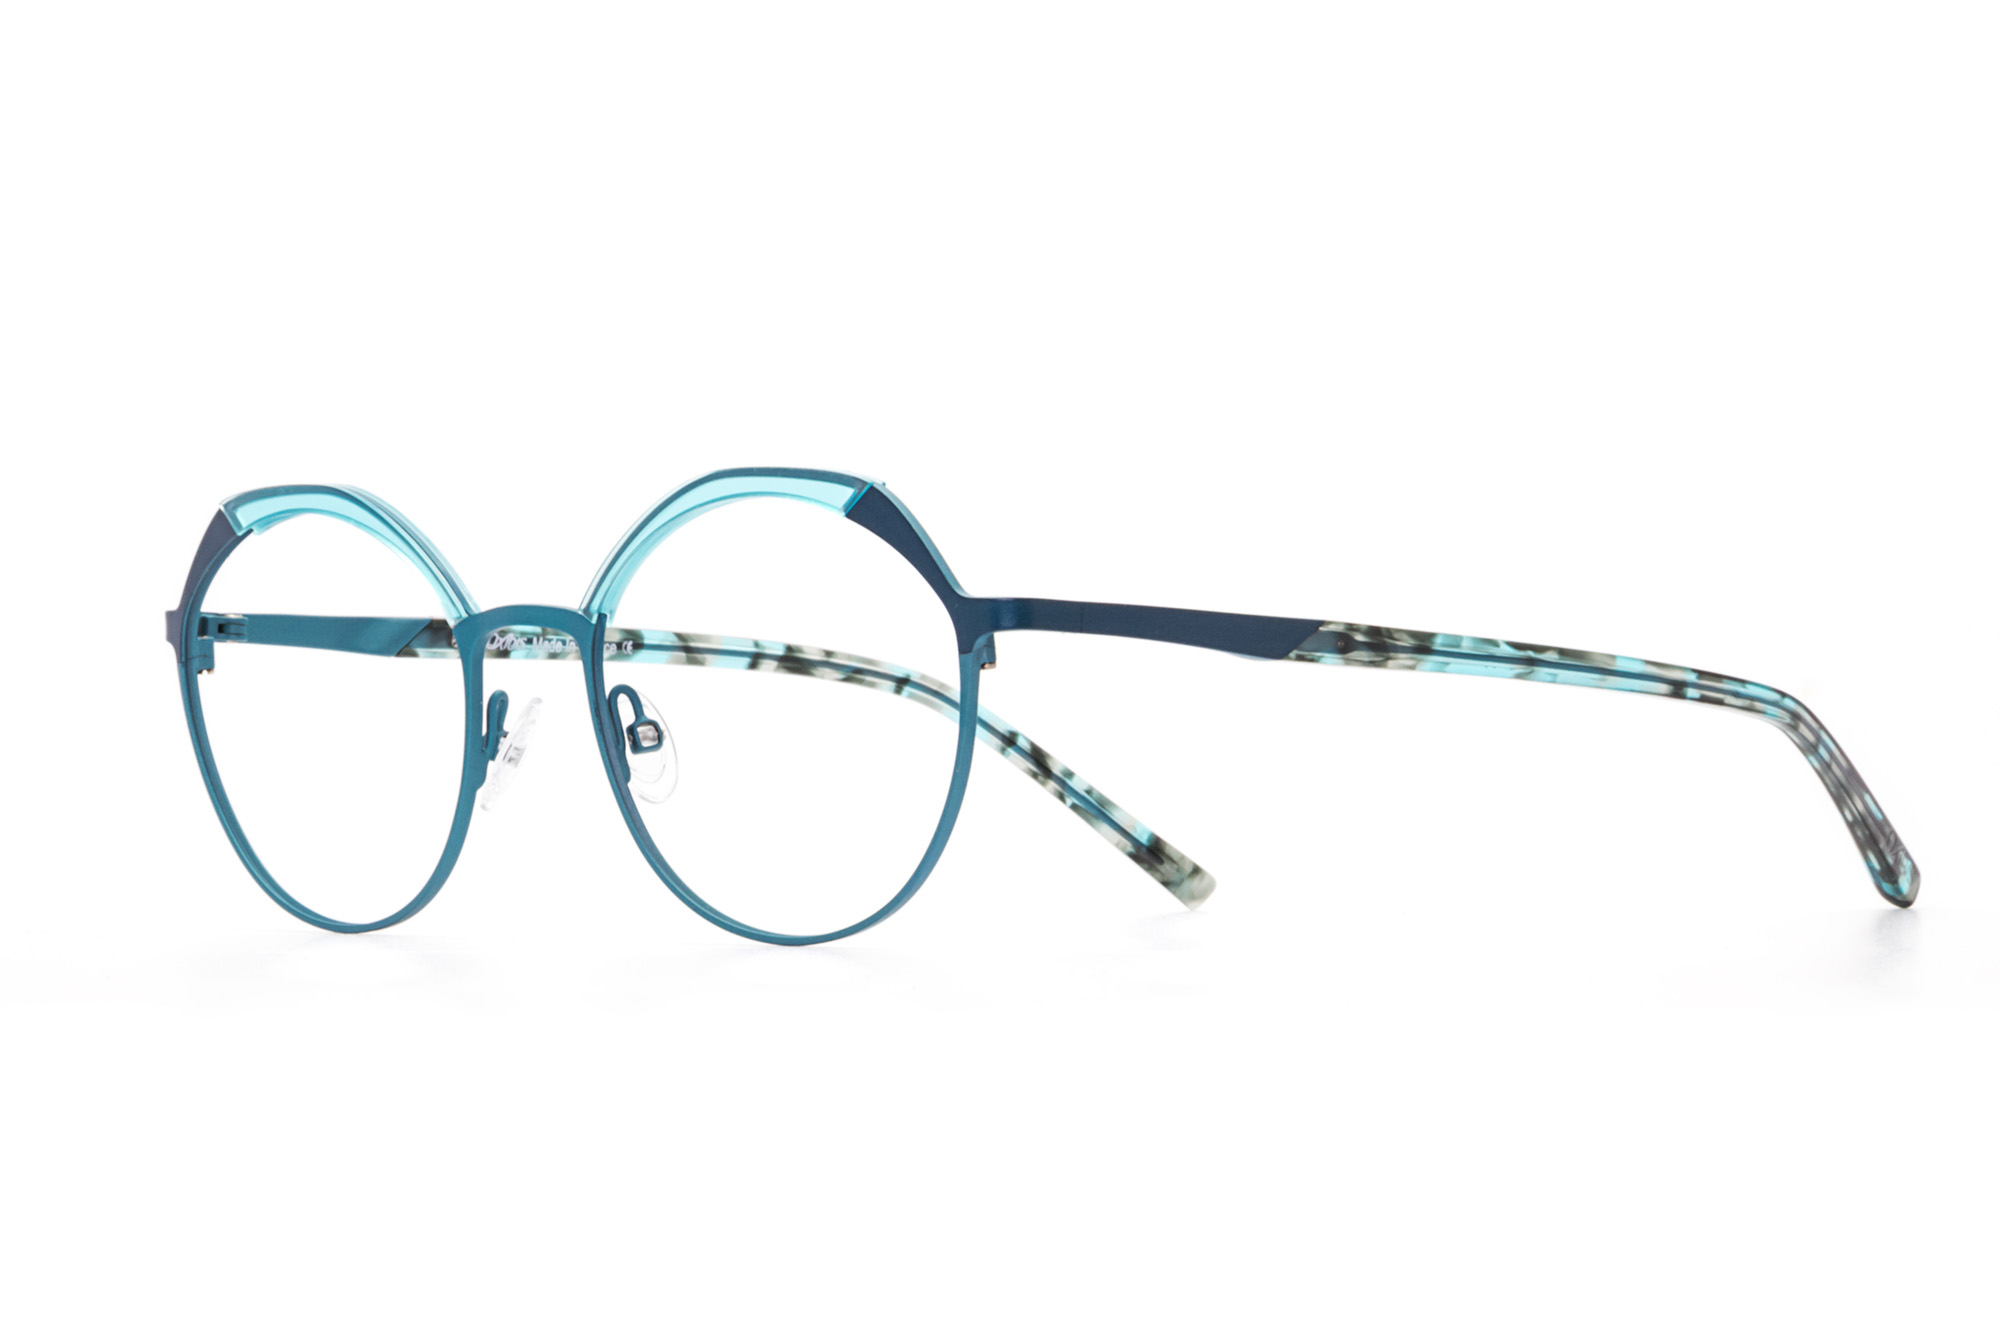 Kullanıma hazır optik tarzda işlenmiş camları ve optik uyumlu çerçevesiyle Oxibis Bikini BK3C4 51 orta ekartman mavi-yeşil ve turkuaz renkli yuvarlak model kadın gözlüğünü optisyen veya gözlükçülerin sunacağı numarasız veya numaralı cam özelleştirmeleriyle size en yakın gözlükçüden satın alabilirsiniz.